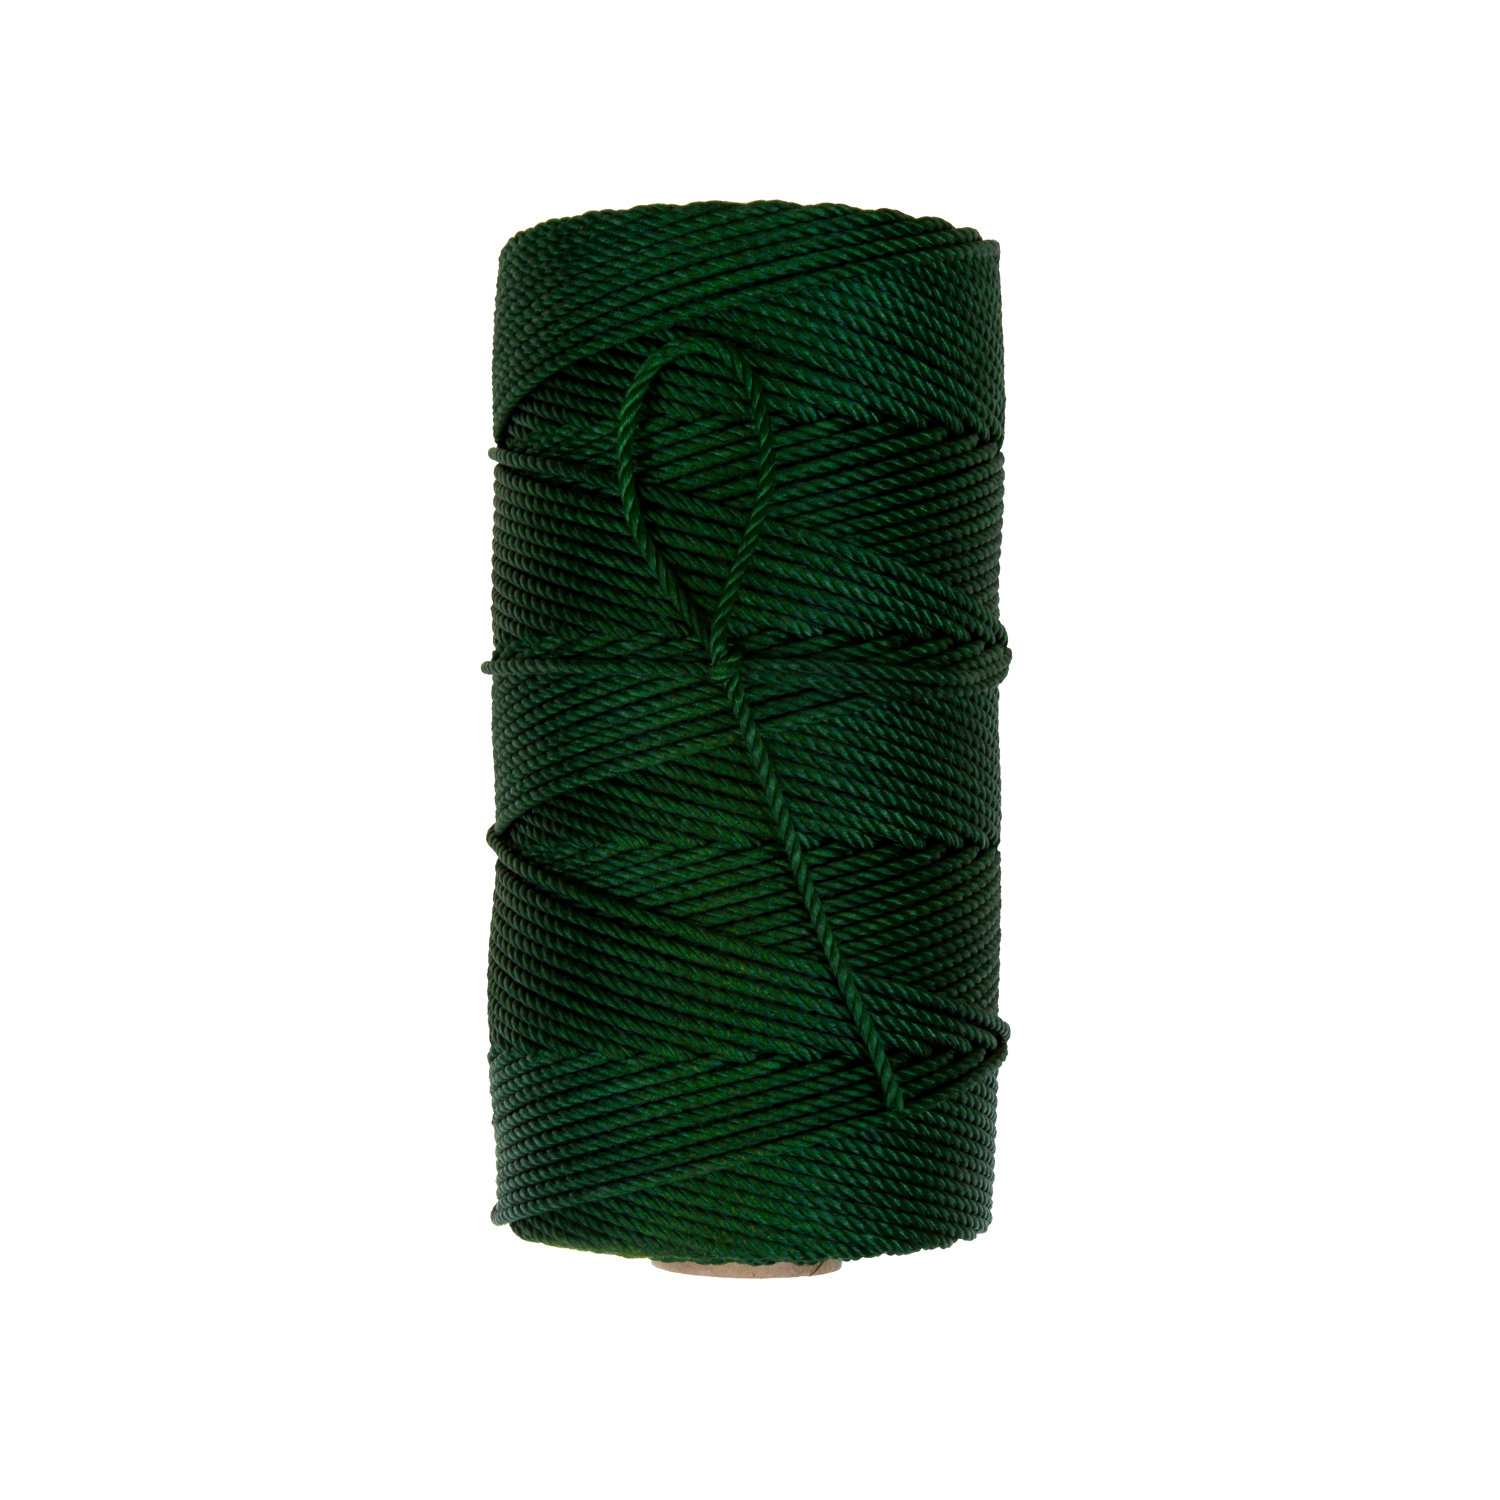 Dyed Green Seine Twine — Everson Cordage Works